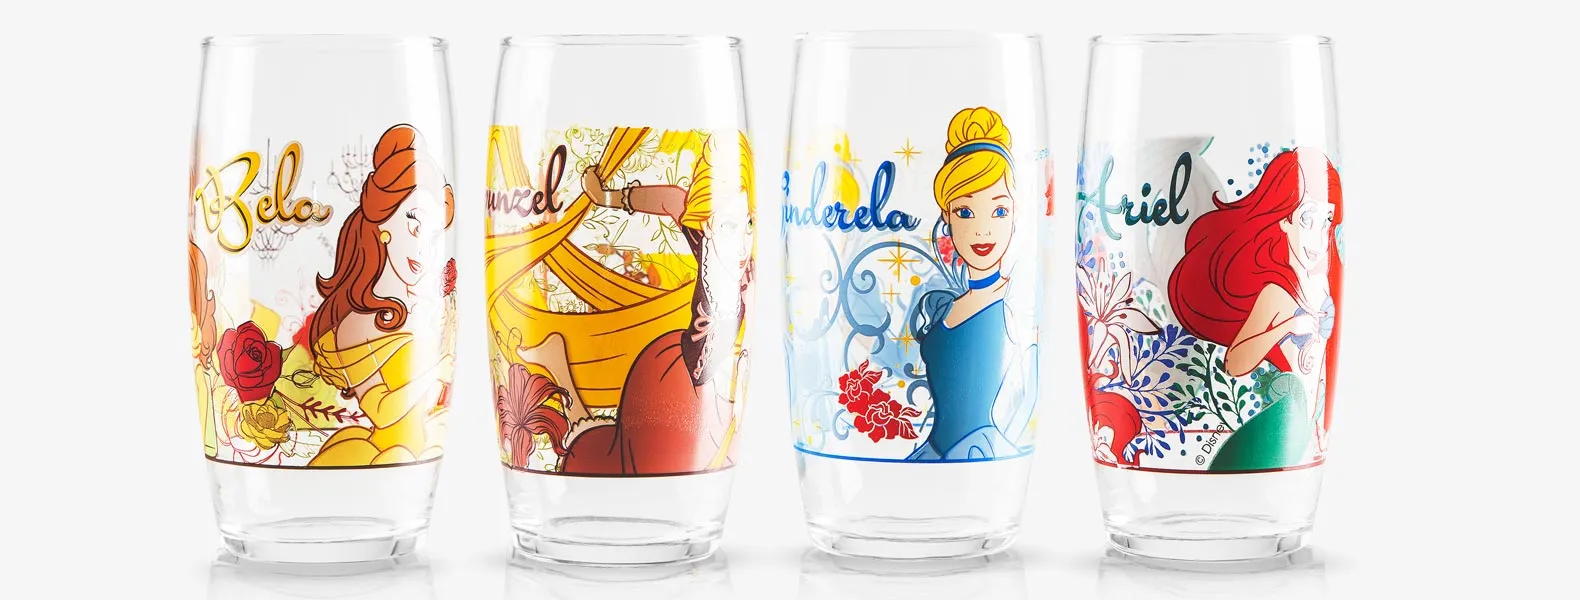 Jogo de copos; Conta com quatro copos Princesas Disney (Cinderela, Bela, Rapunzel e Ariel) em vidro.